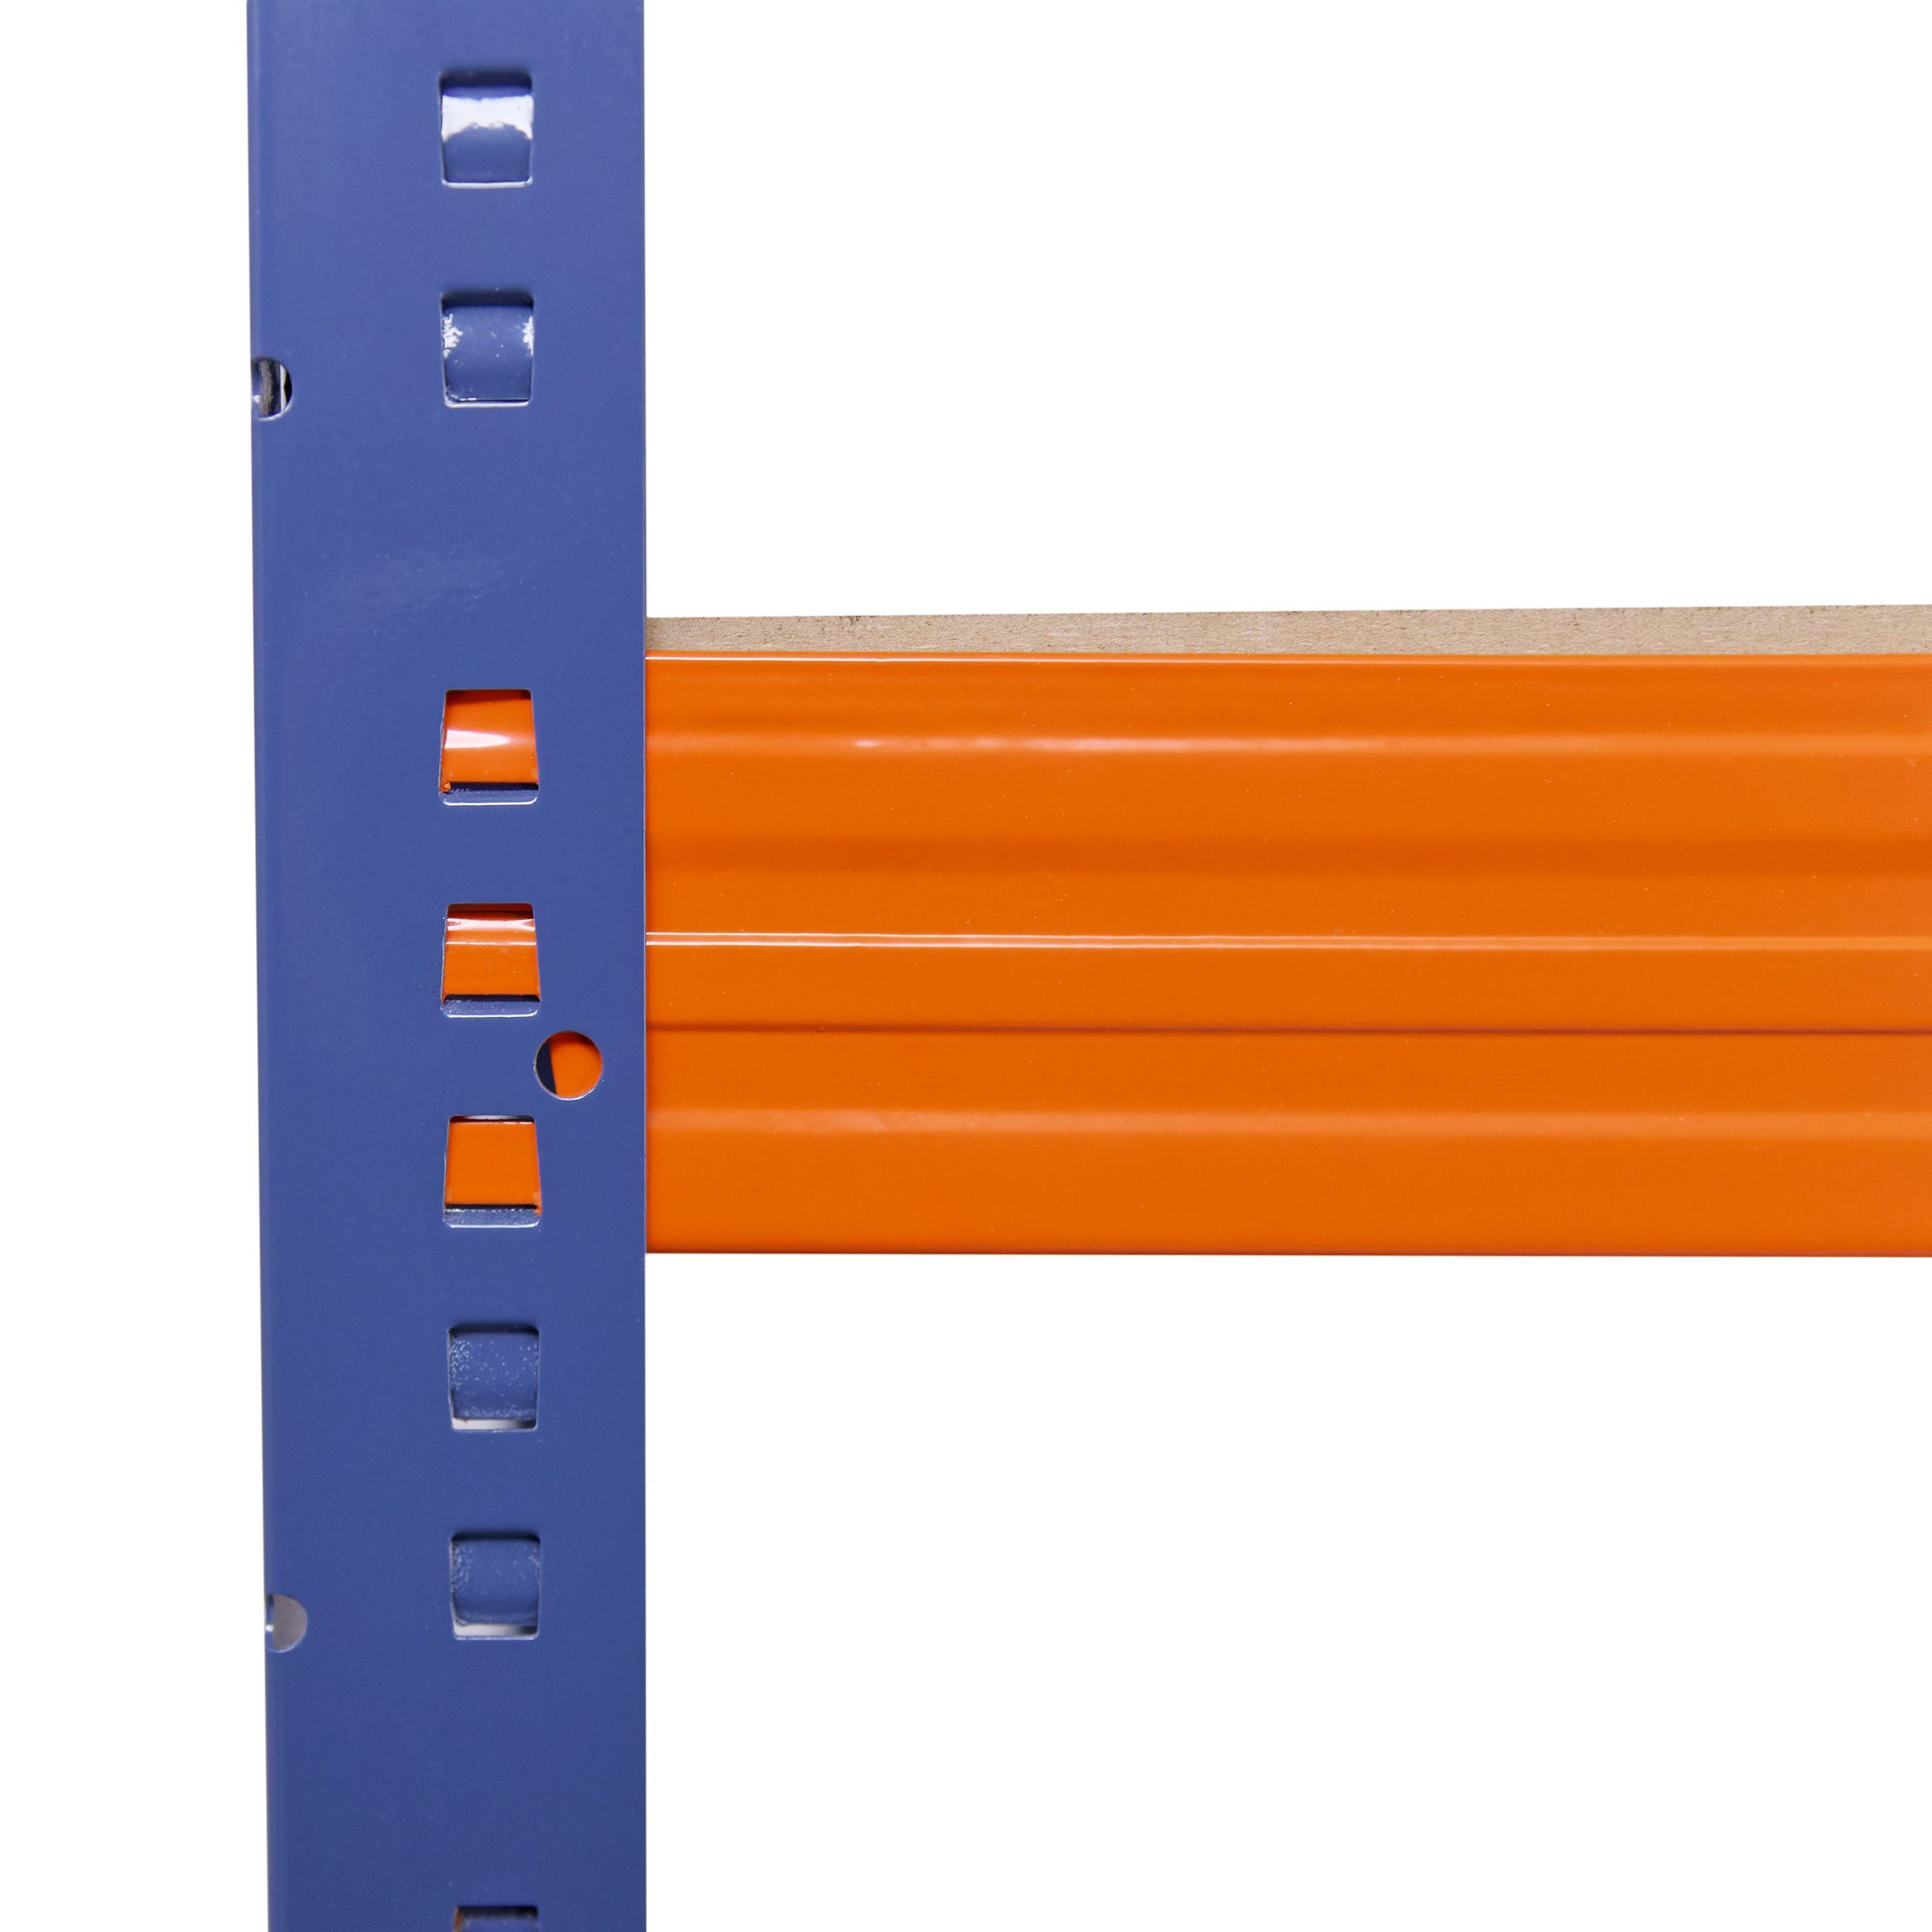 Schwerlastregal mit Regale Garagenregal, Metallregal 6 Steckregal blau-orange, Lagerregal, als & Kellerregal, je shelfplaza Metall 200x60x50cm 166kg Werkstattregal PROFI, Tragkraft, Regal Böden